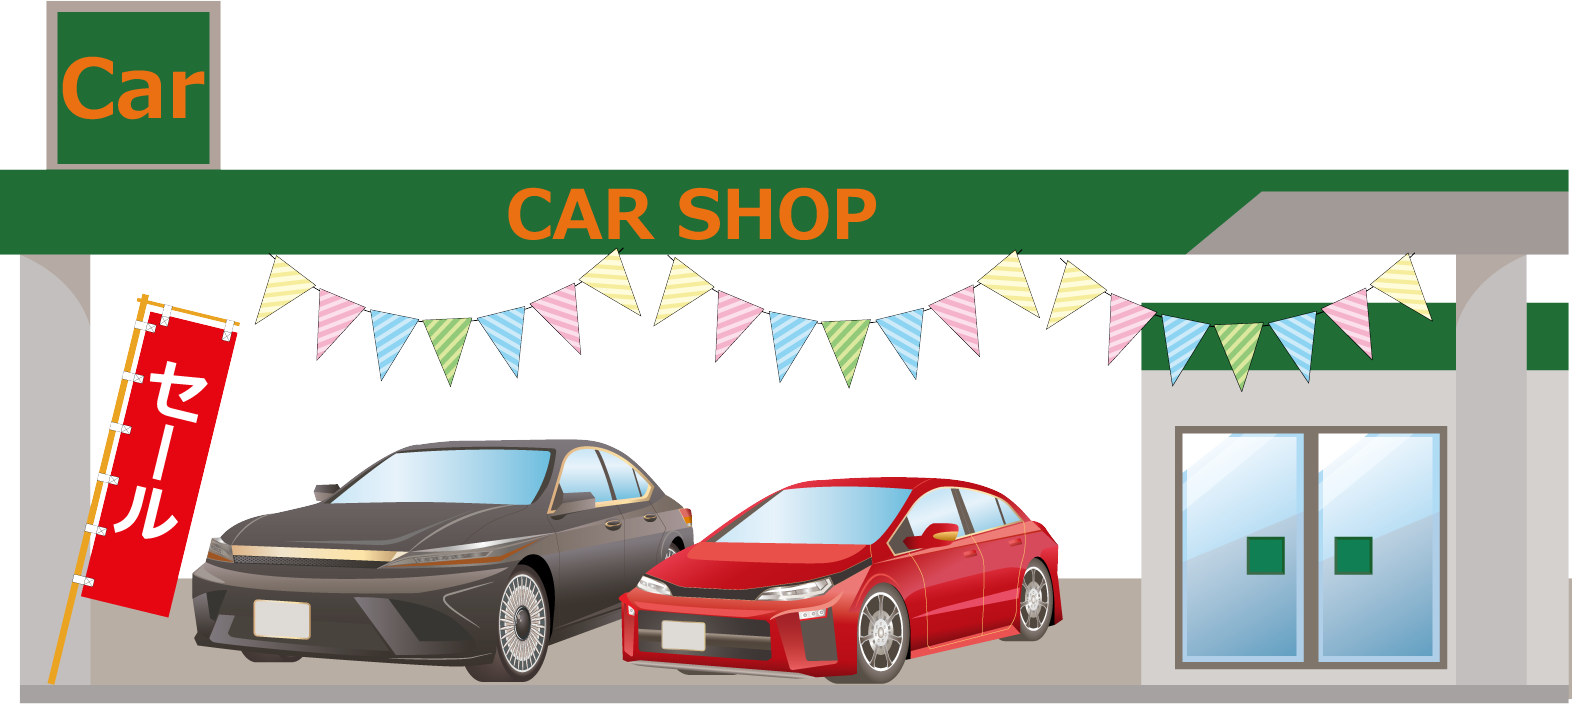 岩見沢市の車買取店やカーショップなどの一覧